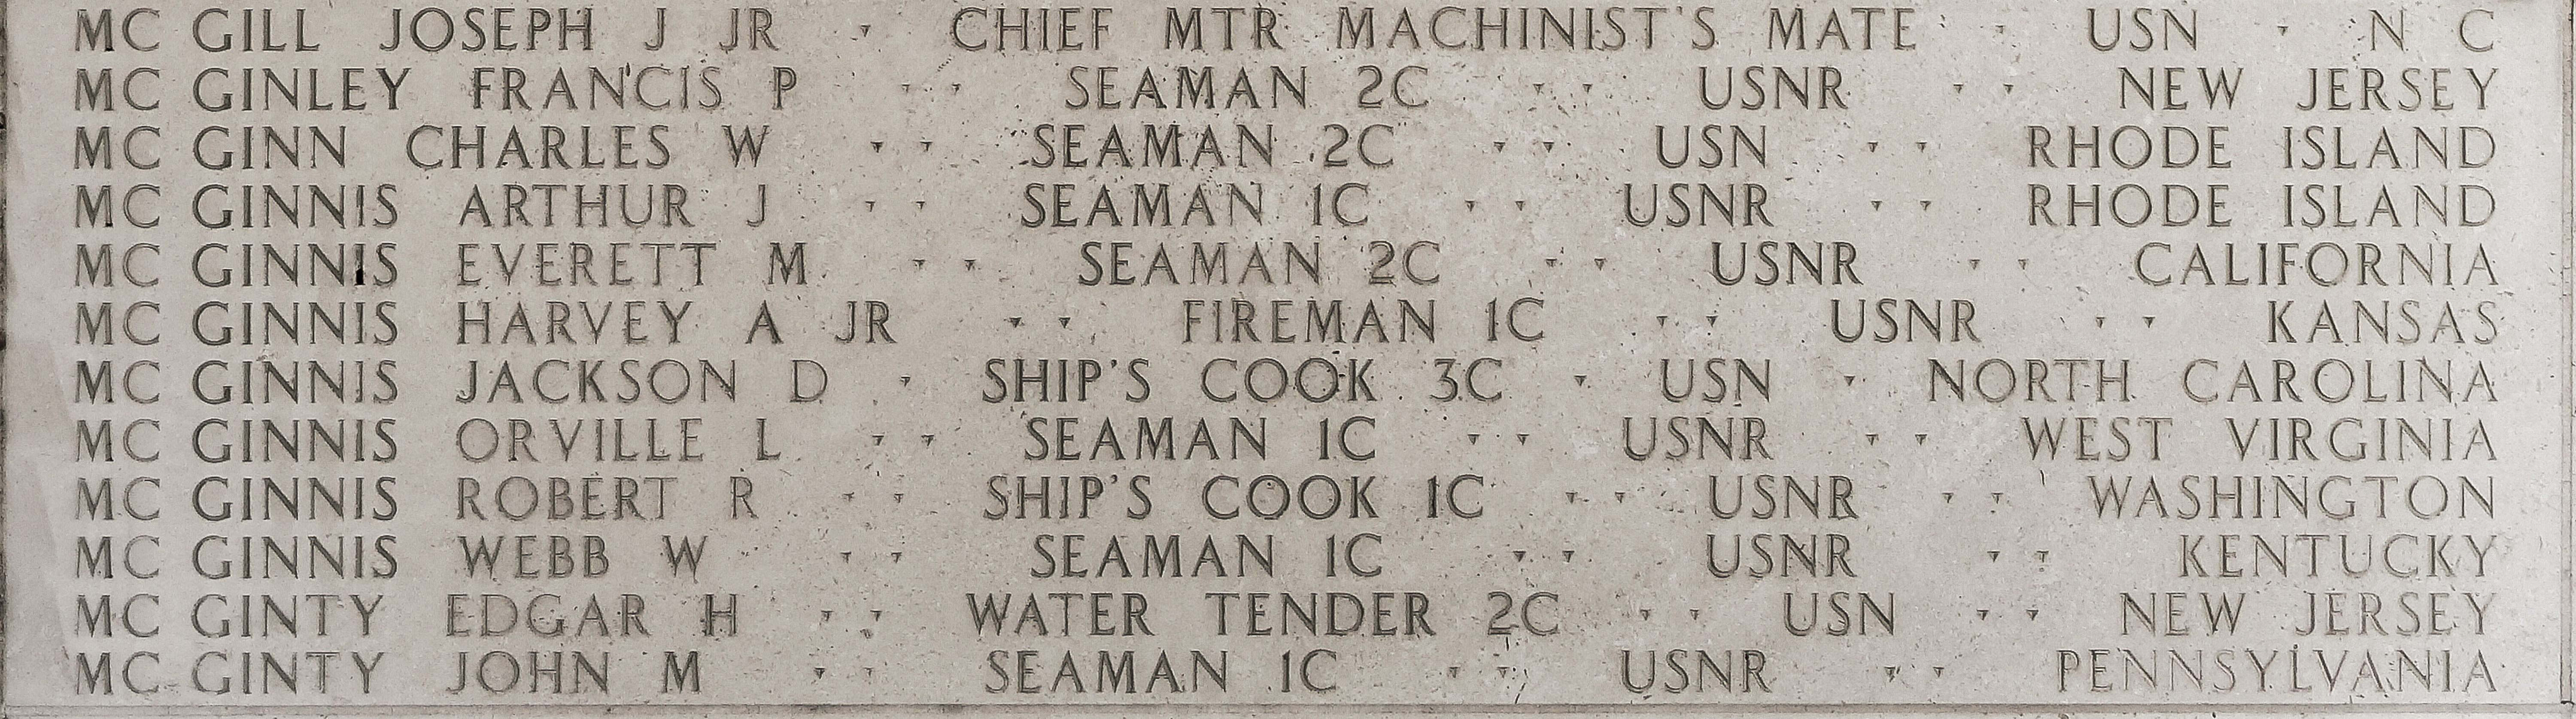 Robert R. McGinnis, Ship's Cook First Class